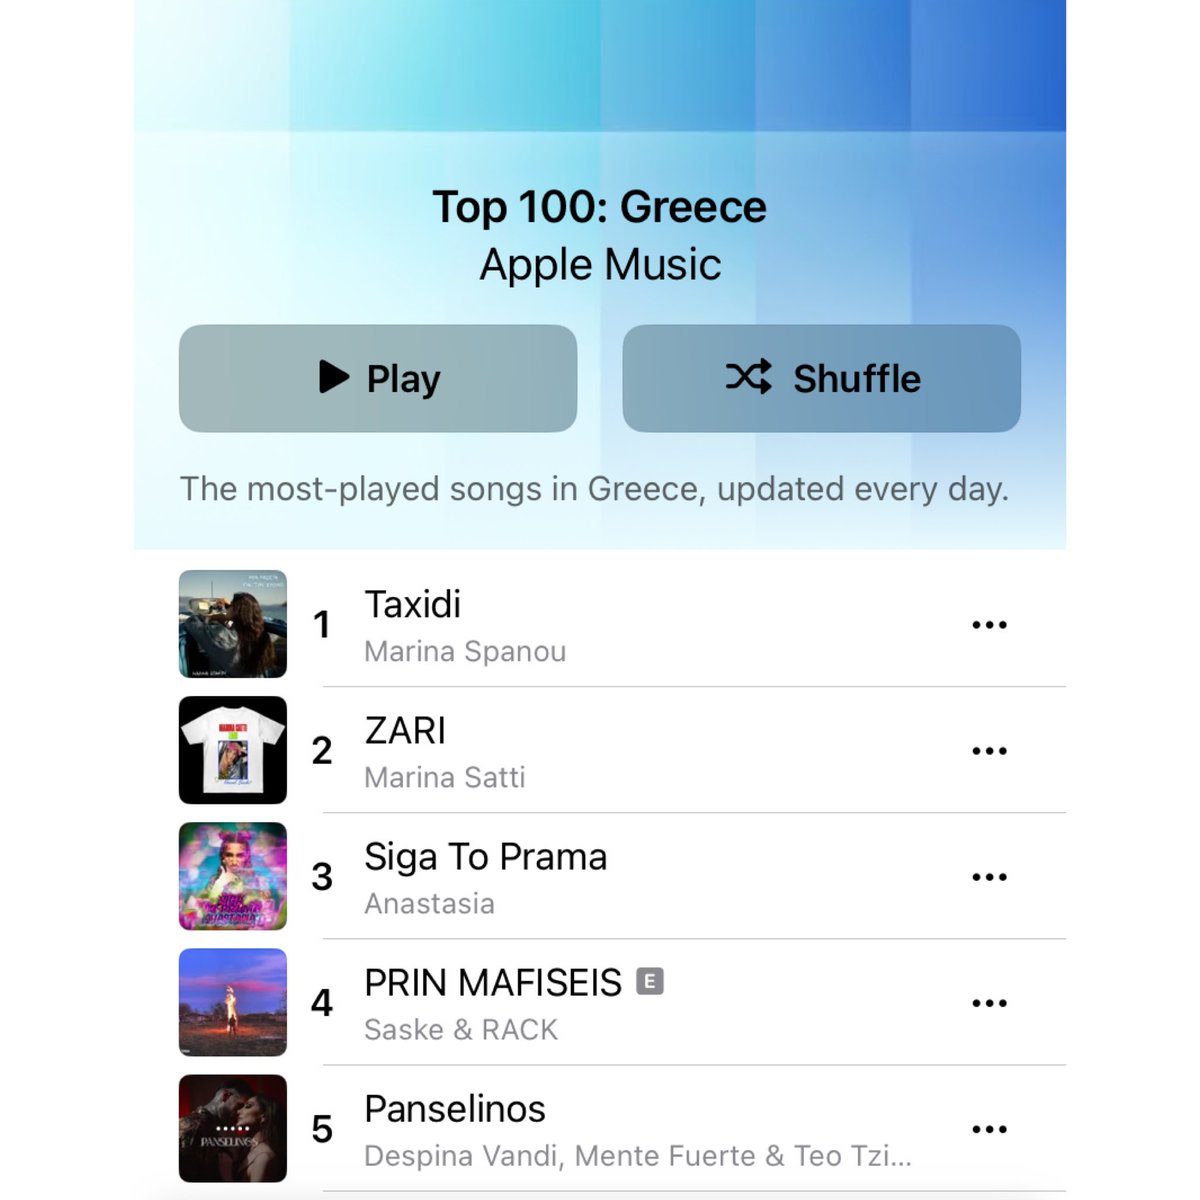 Η «Πανσέληνος» έφτασε στο TOP 5 του Apple Music Chart Ελλάδας 🇬🇷 🔝 @Desp1naVandi